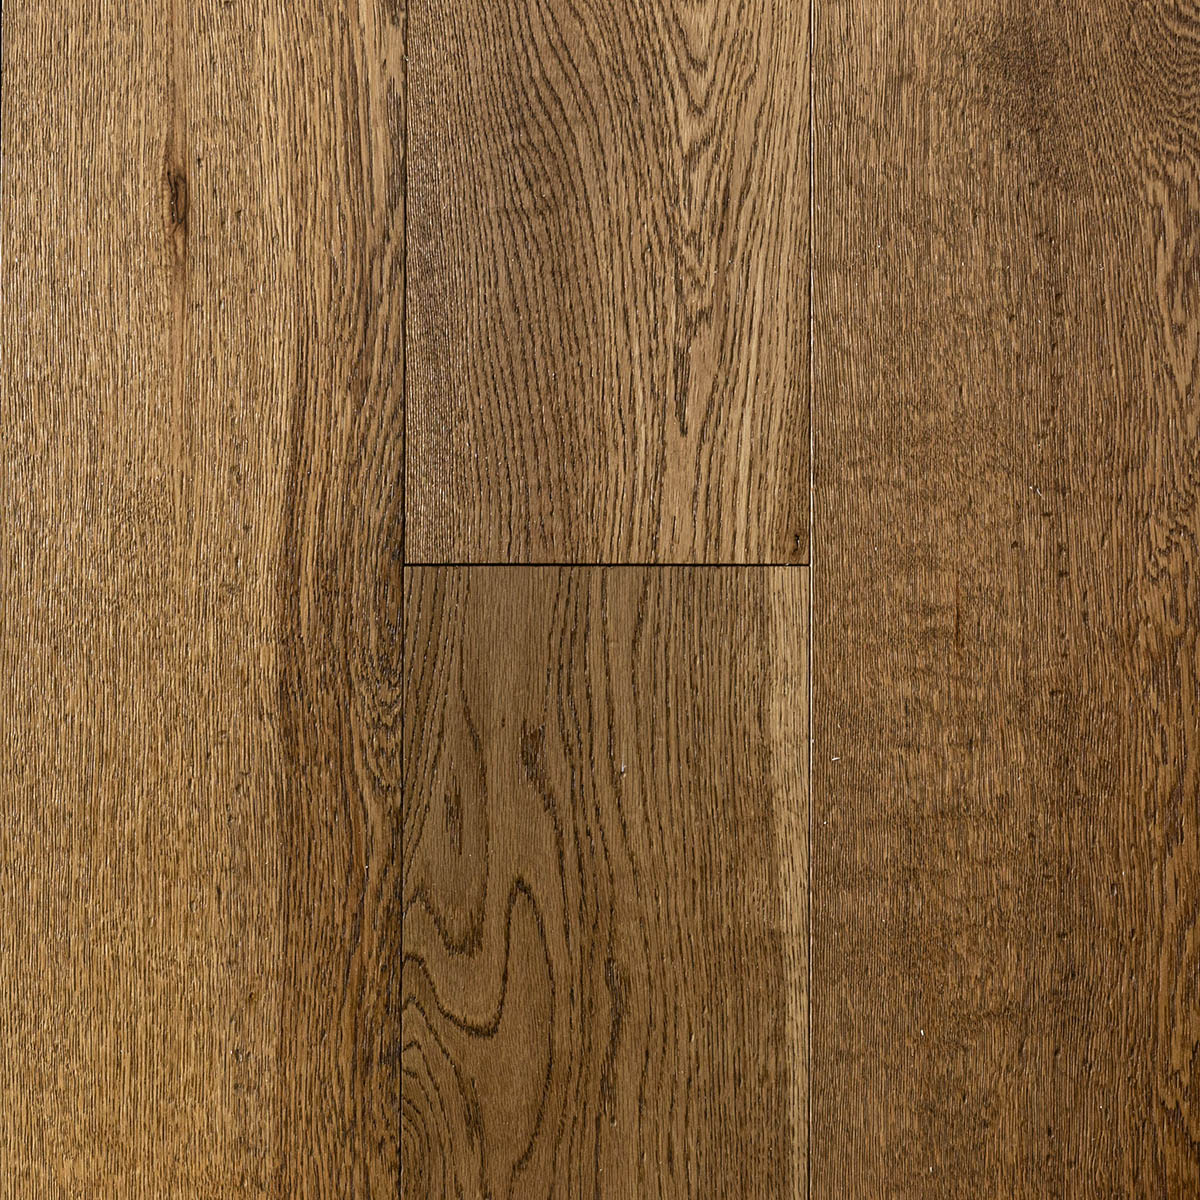 Anstey Lane - 189mm Wide Plank Rustic Grade Oak